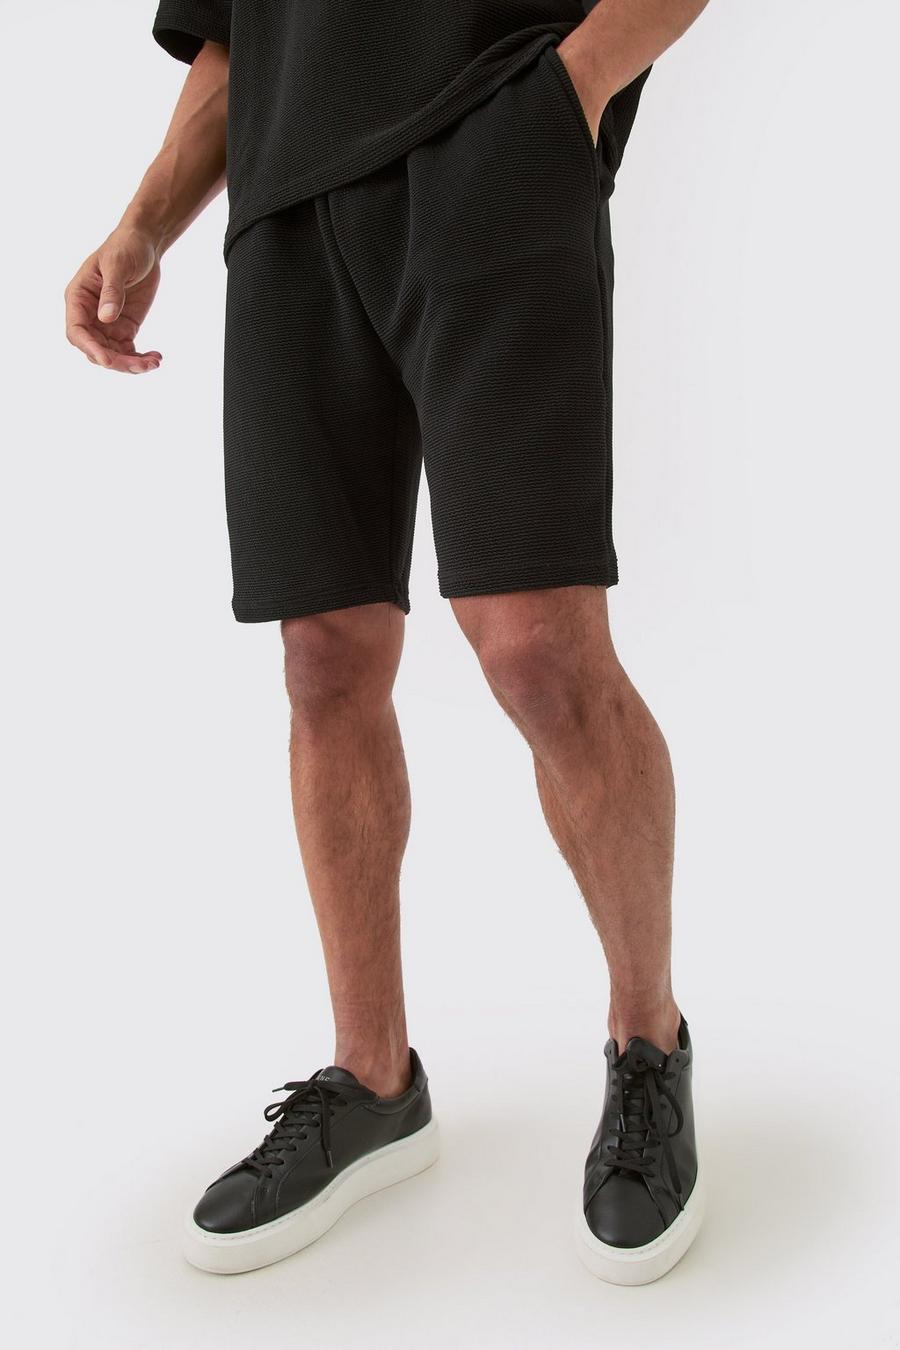 Black Mellanlånga shorts med struktur och ledig passform